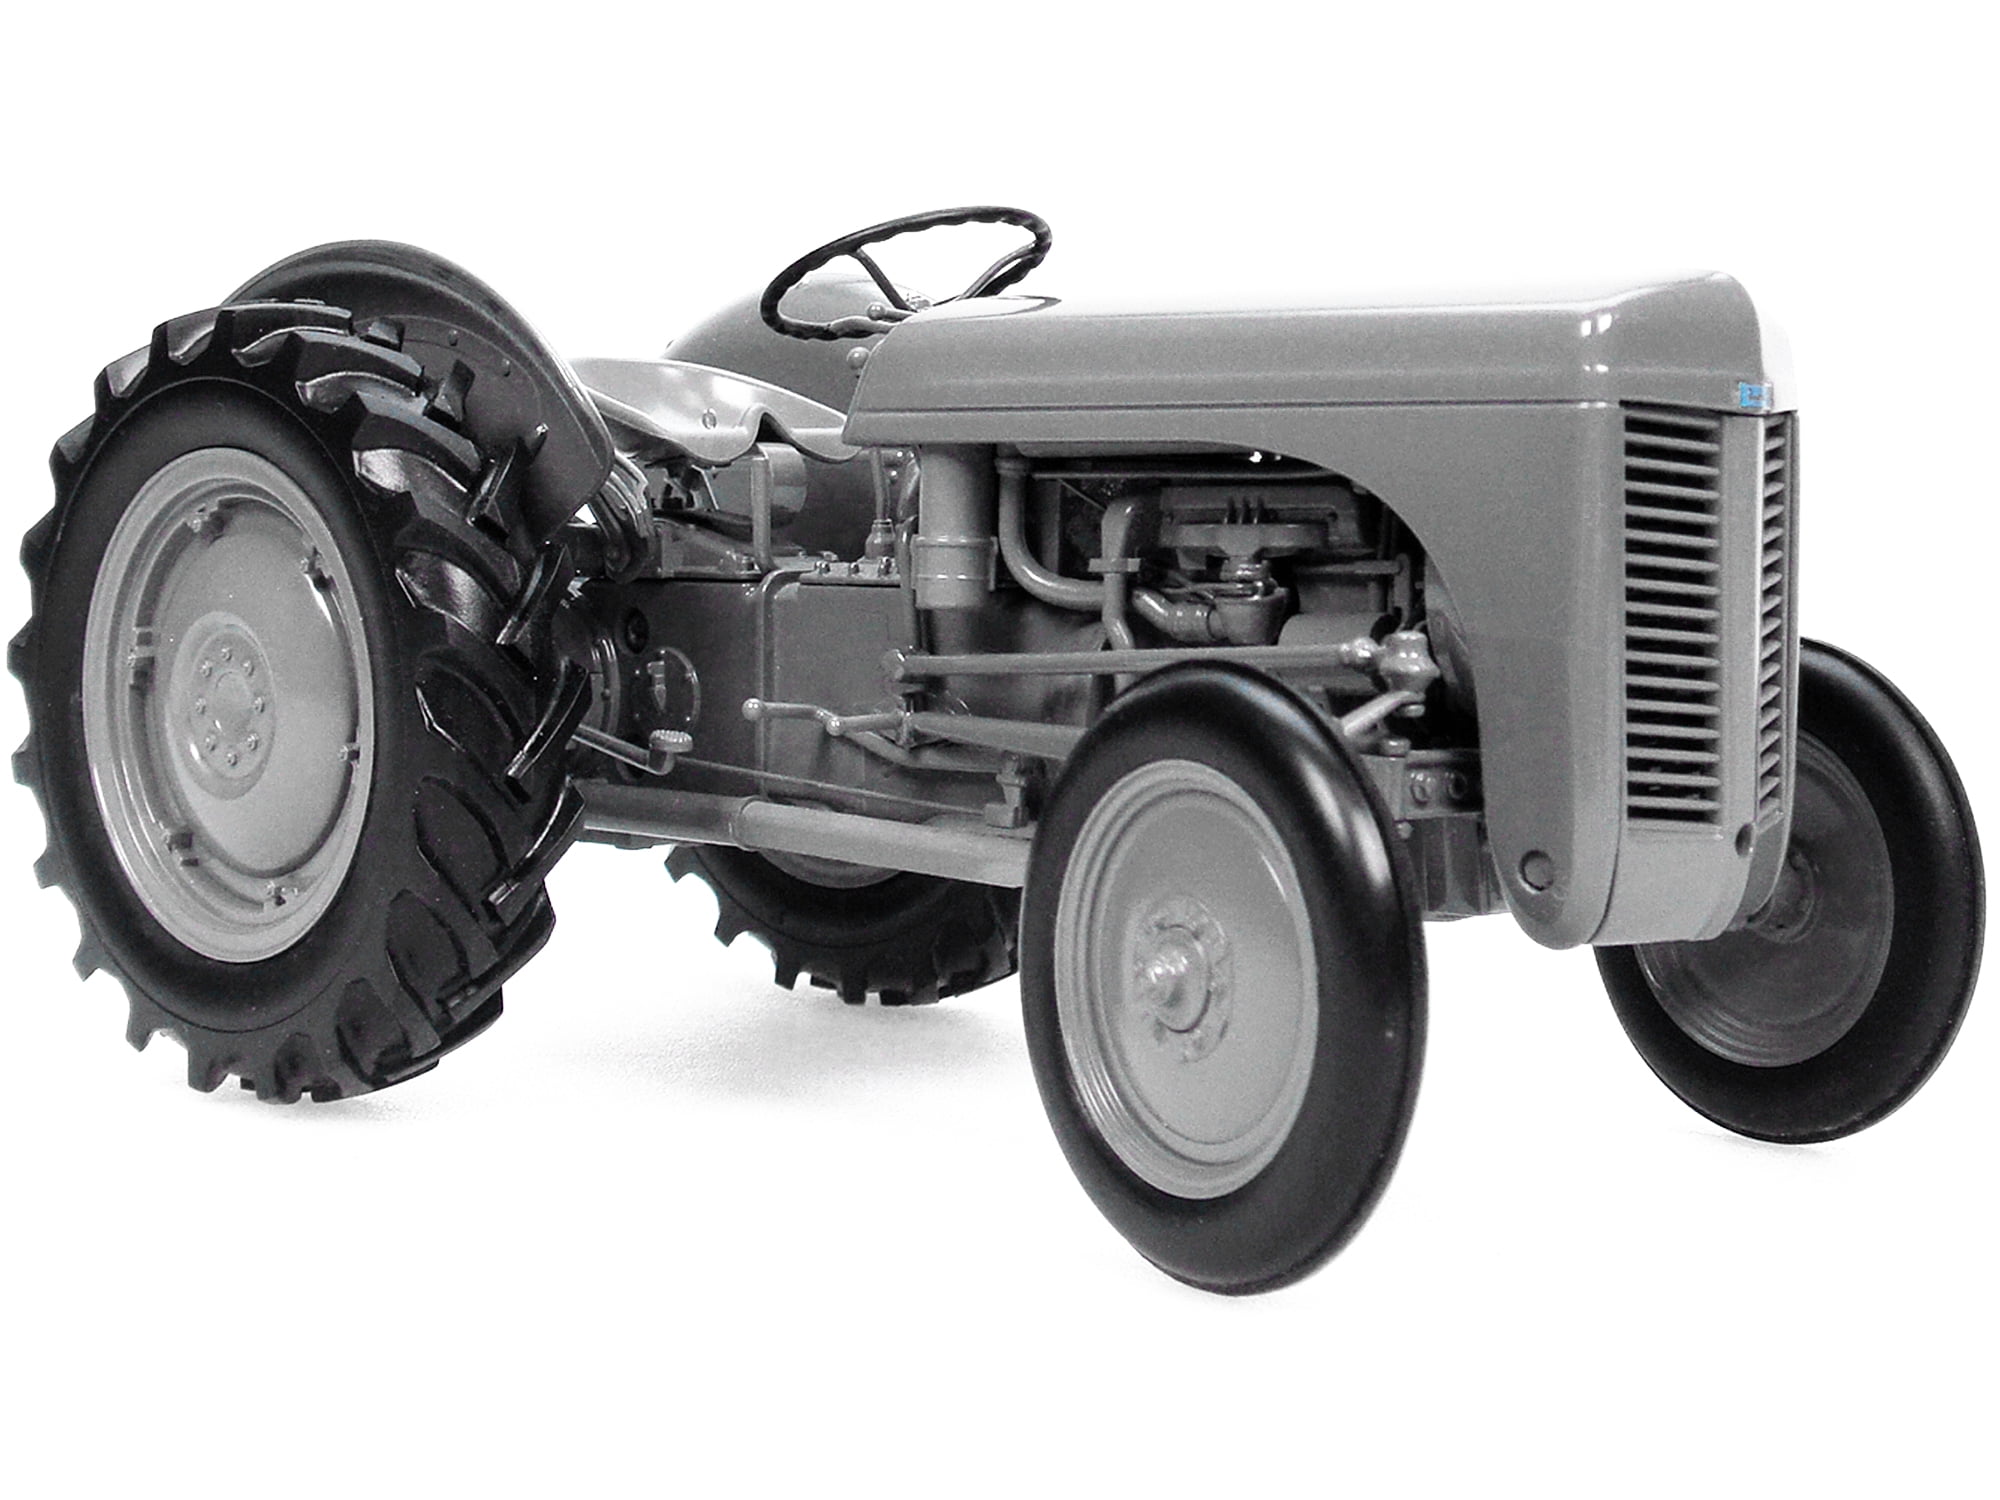 Maquette Tracteur : Kit : Massey-Ferguson 2680 - N/A - Kiabi - 35.92€